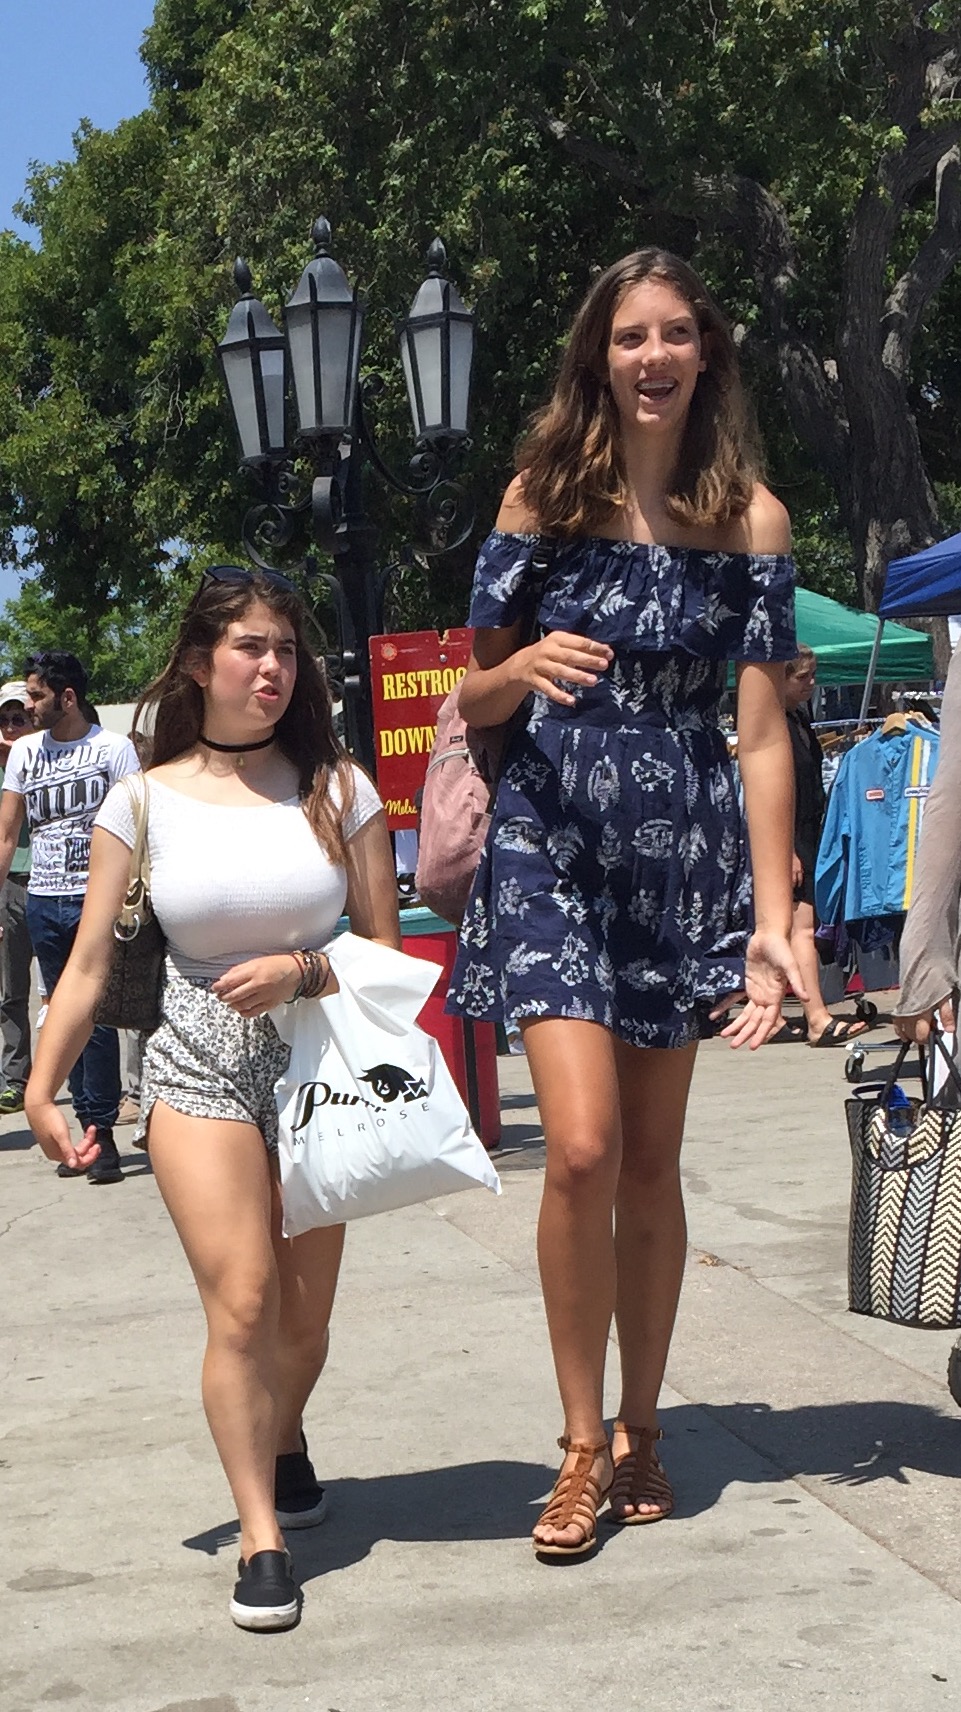 taller girls